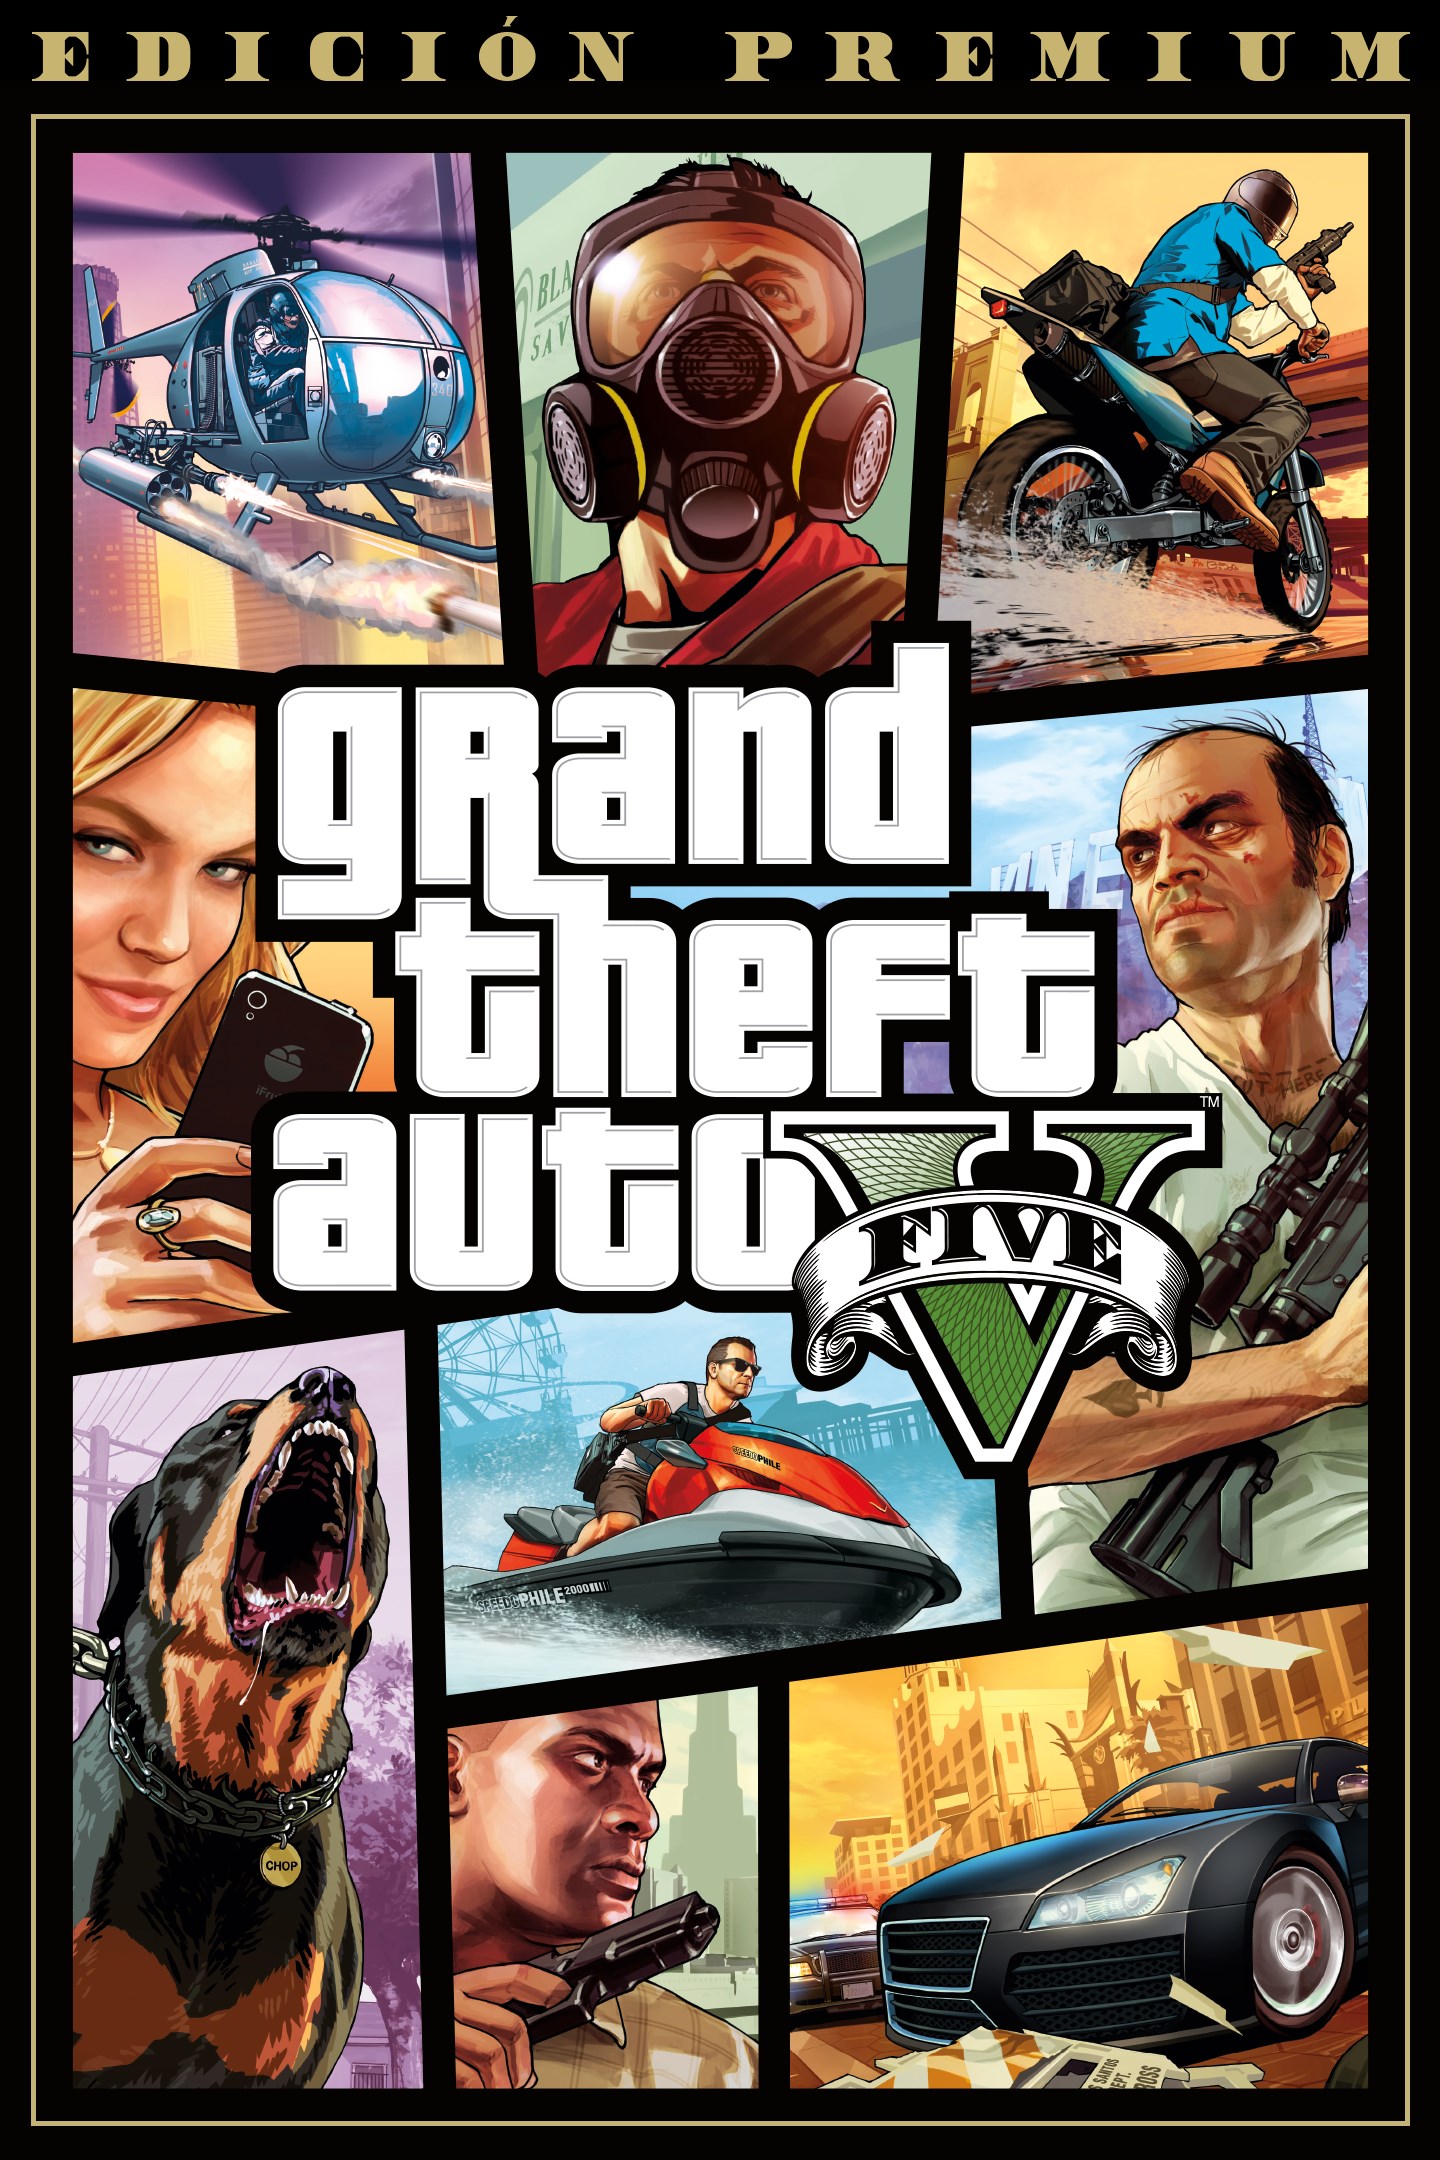 Escandaloso Desventaja genéticamente Grand Theft Auto V | Xbox